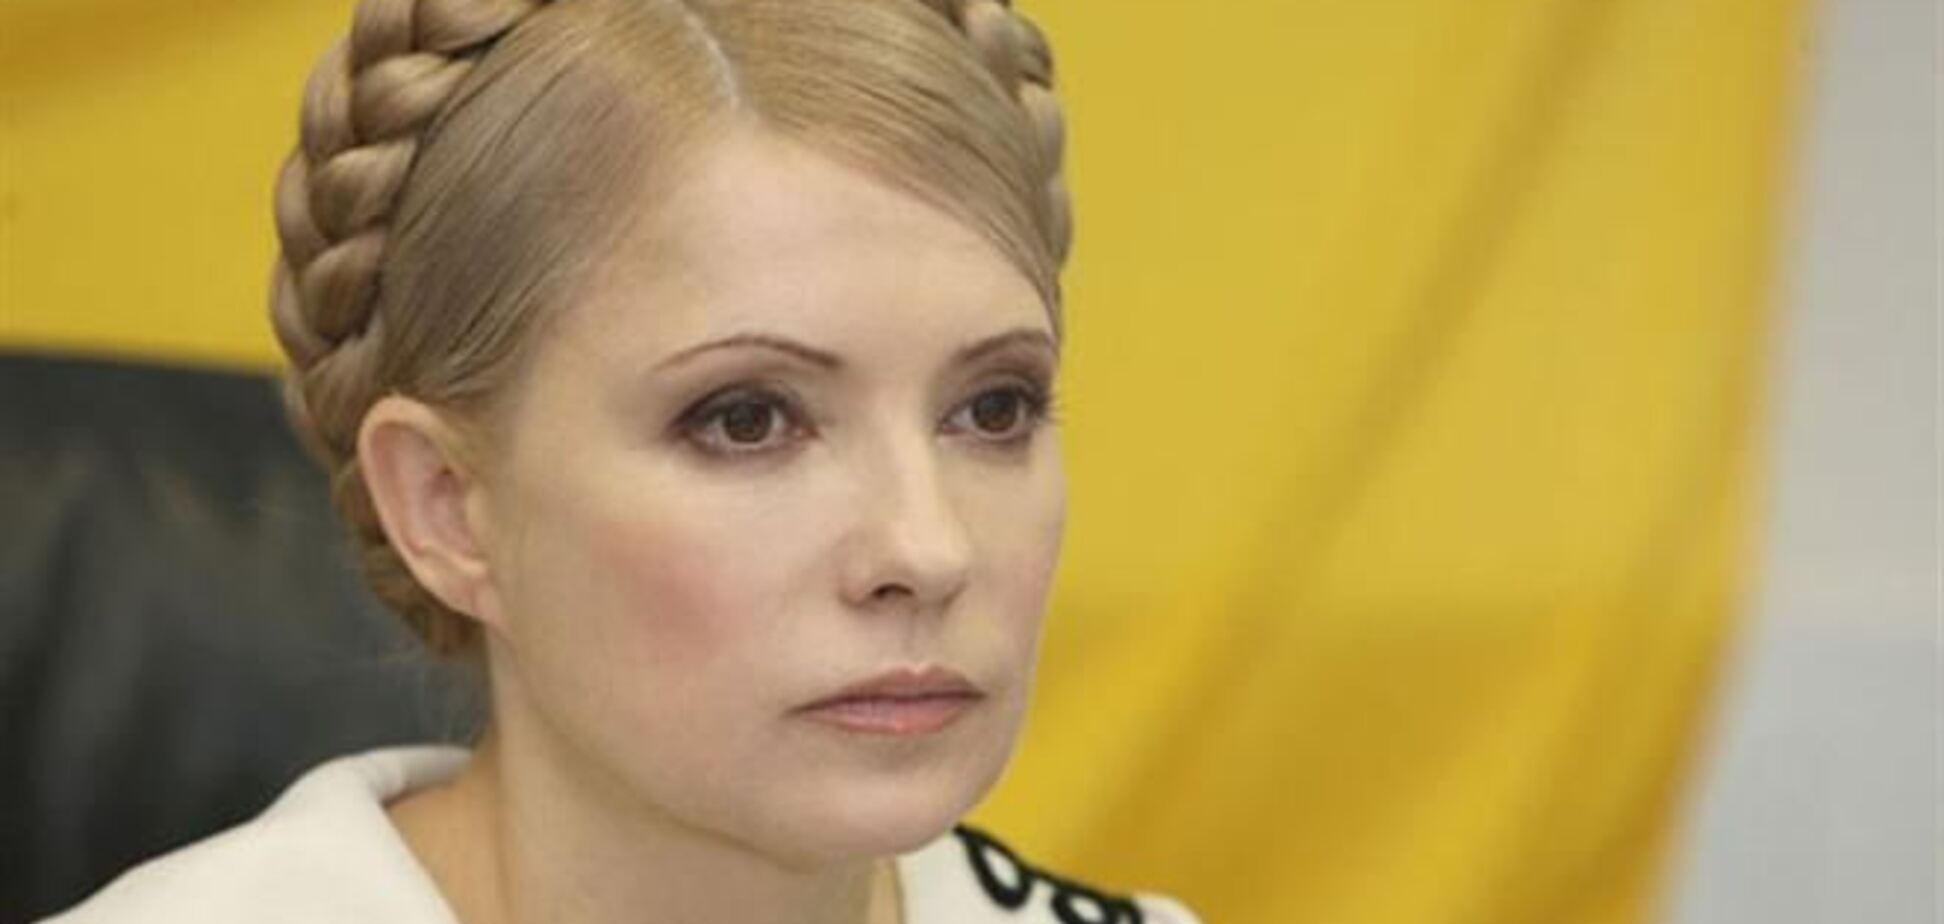 Тимошенко в тюрьме научилась смотреть сквозь стены